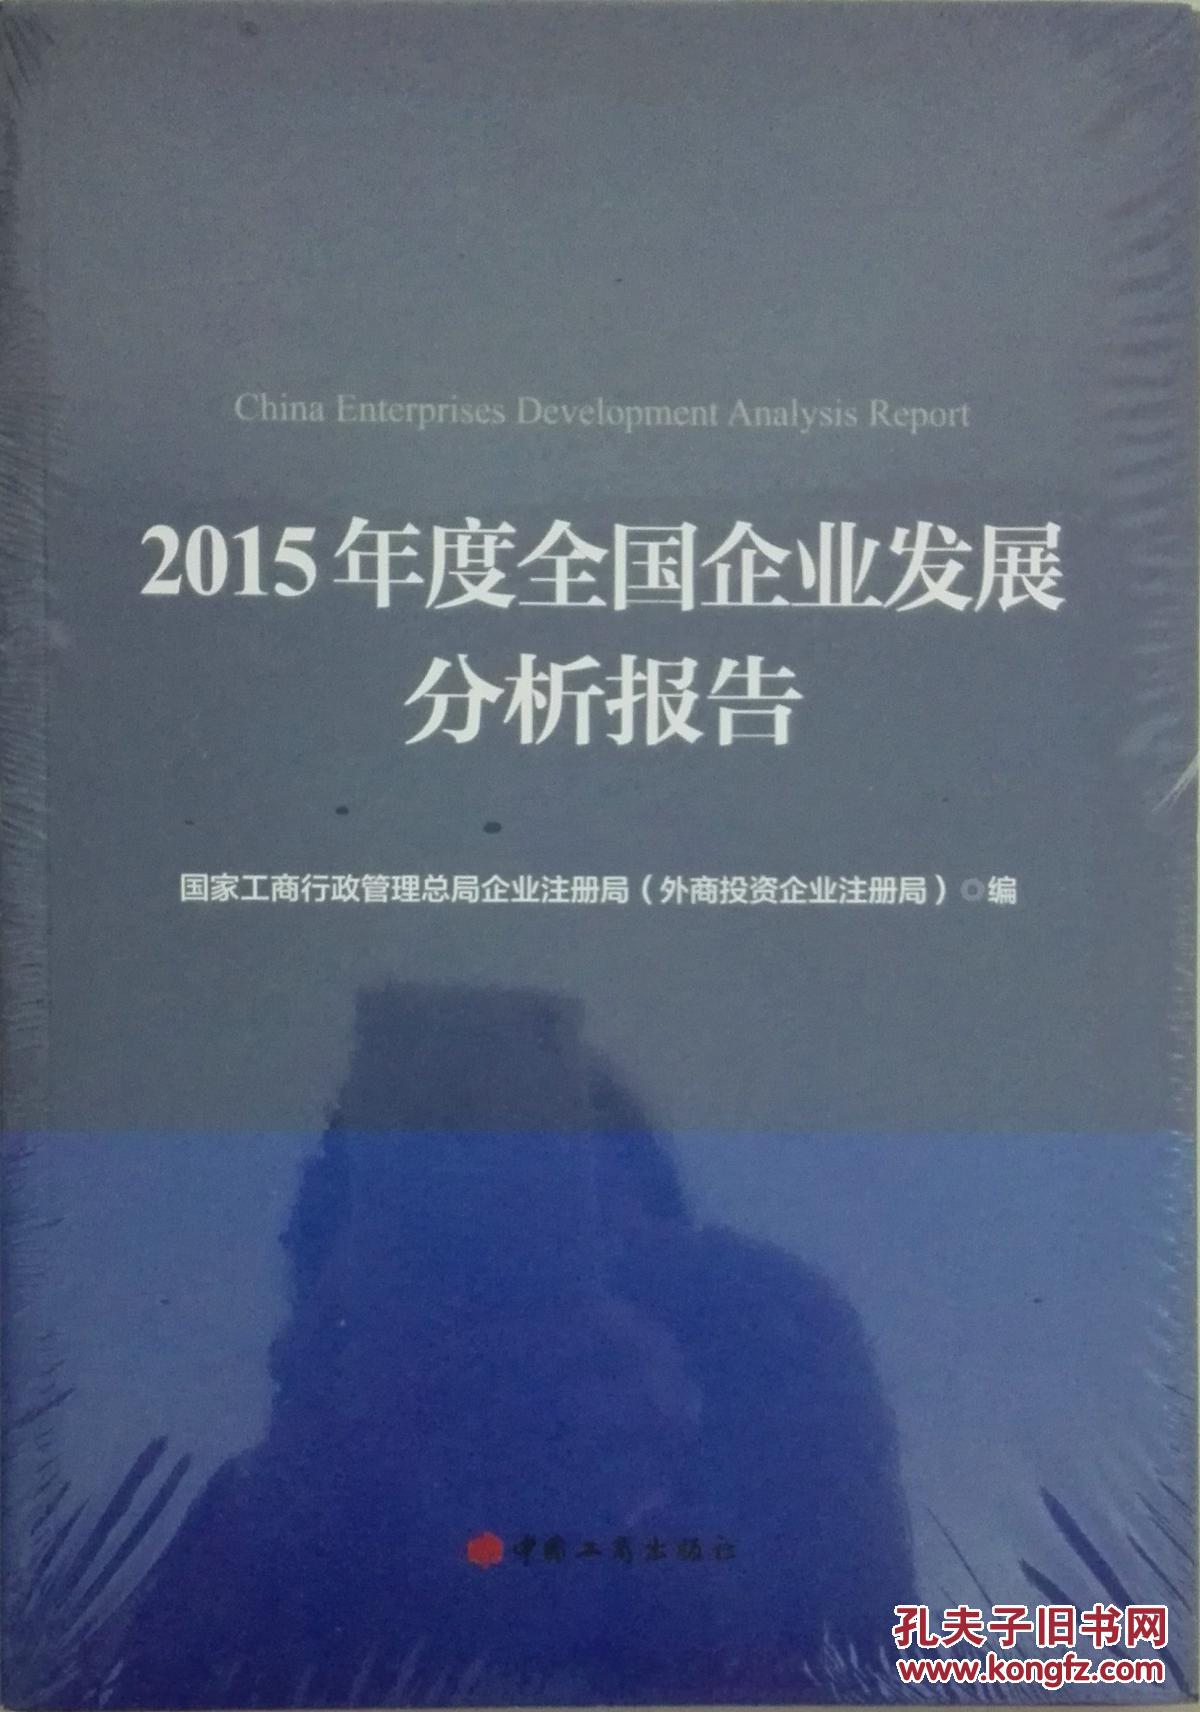 2015年度全国企业发展分析报告